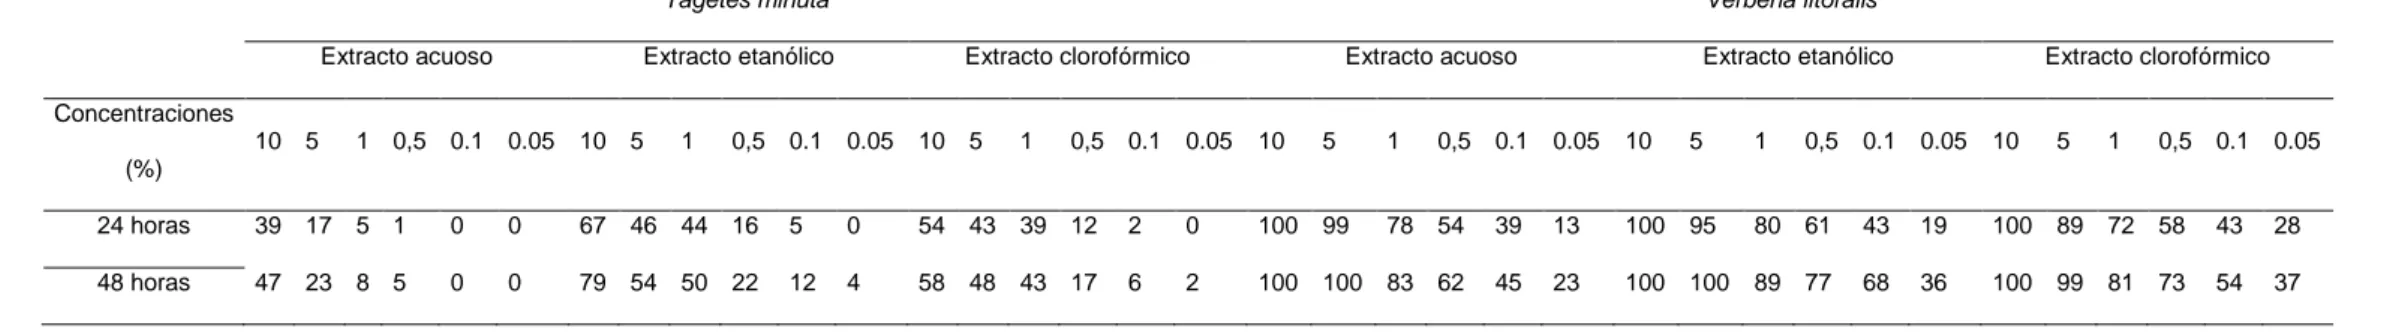 Tabla 5. Porcentaje de mortalidad larvaria de los extractos foliares acuoso, etanólico y clorofórmico de Tagetes minuta y Verbena litoralis